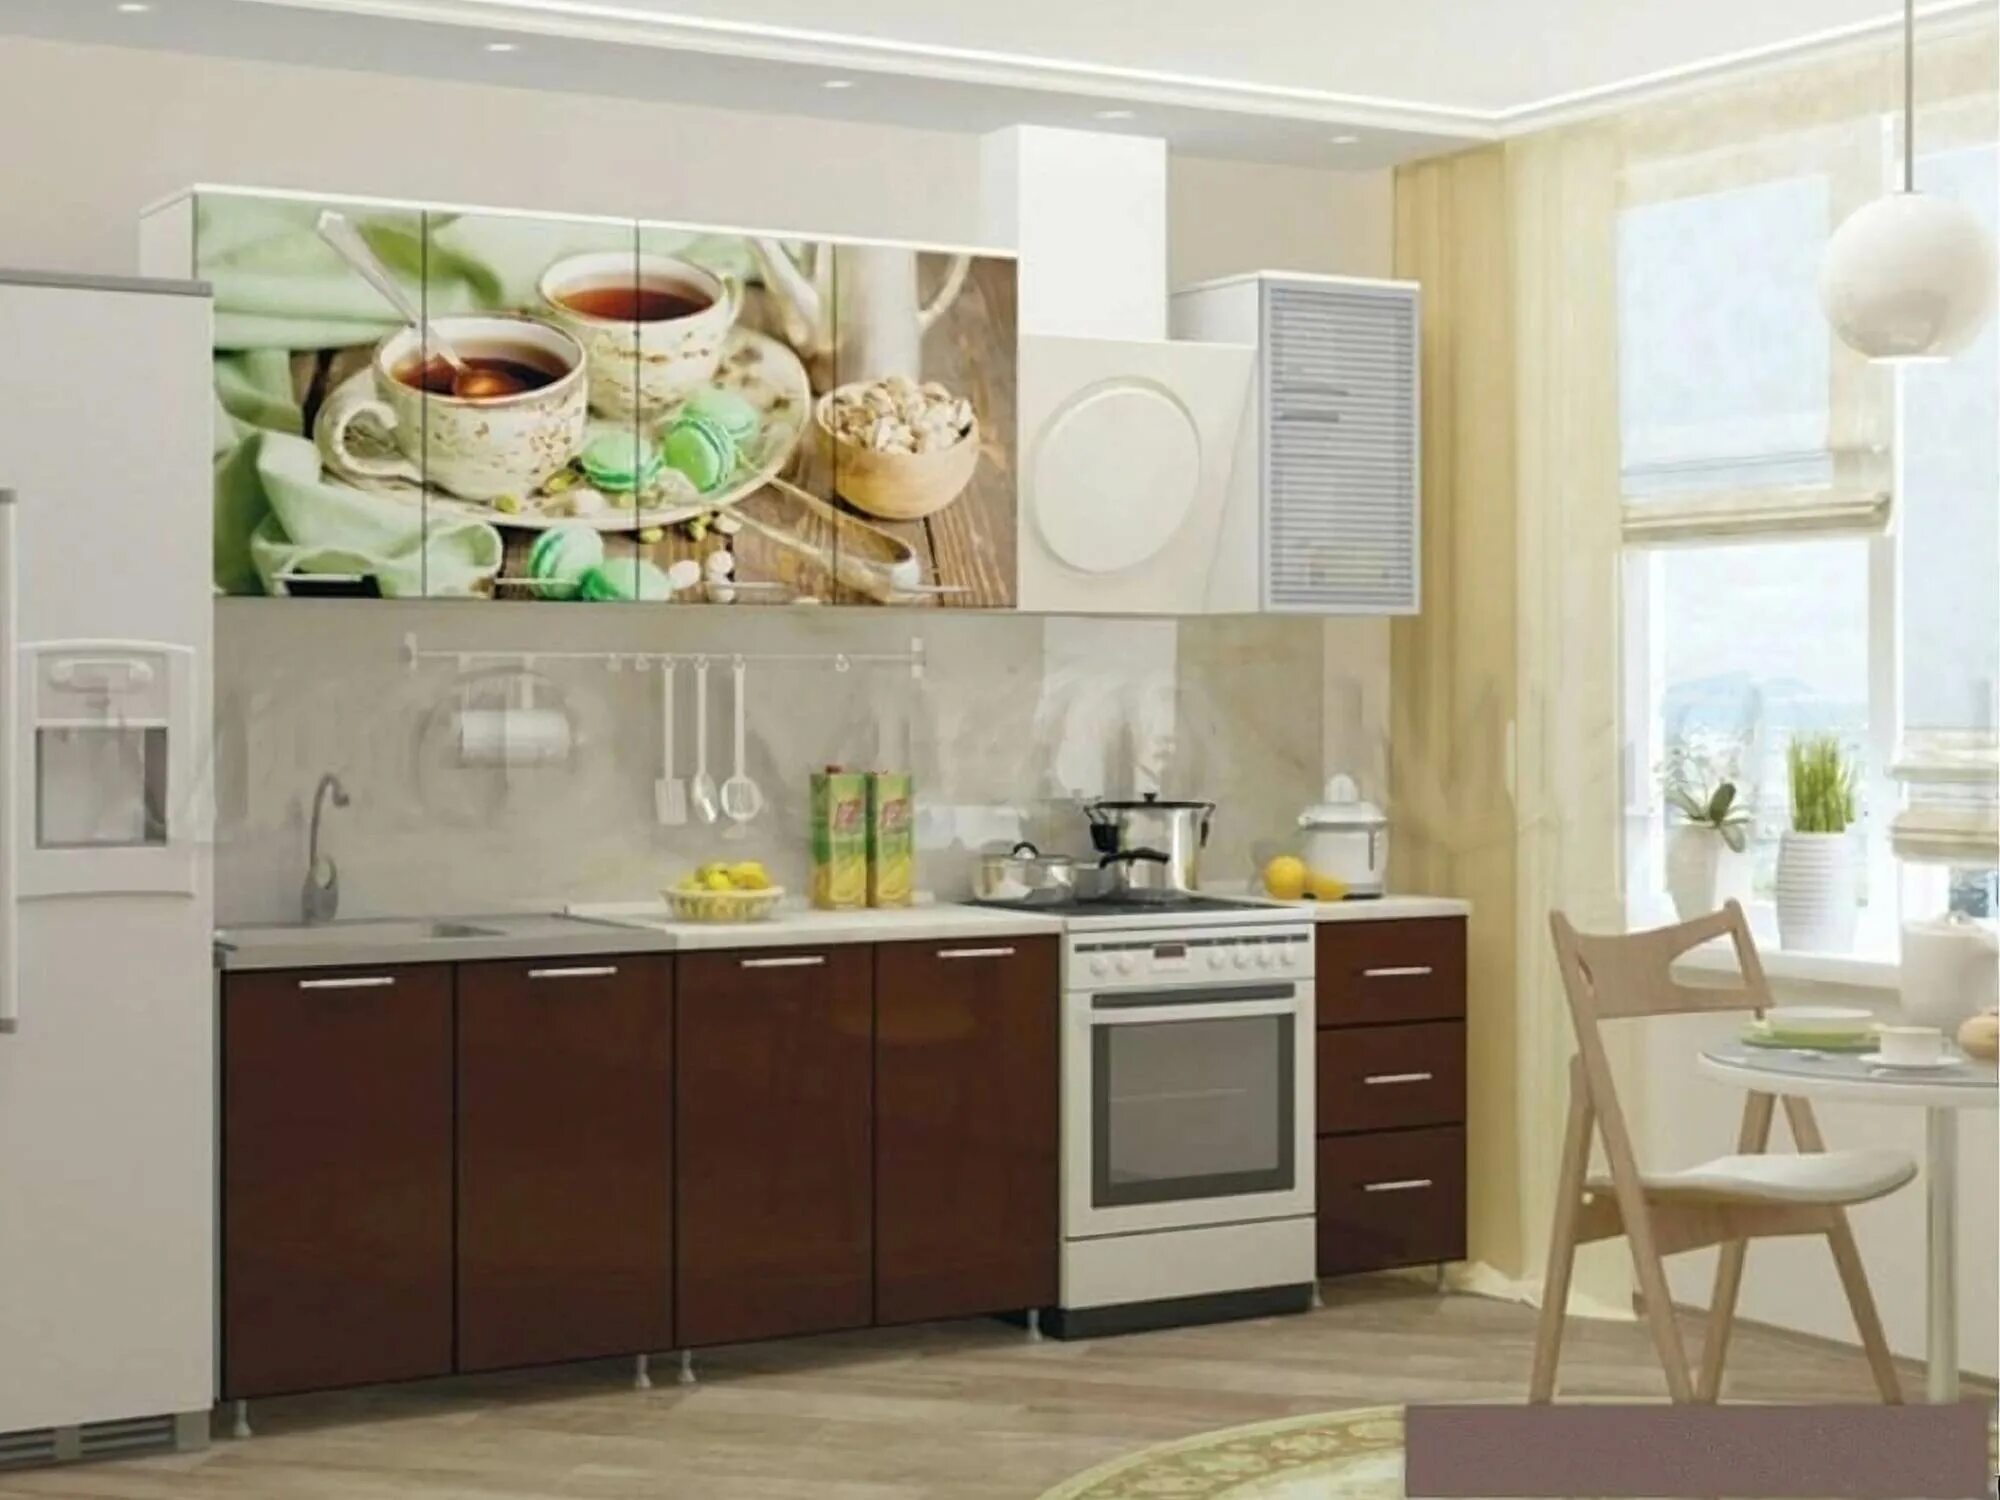 Кухонный гарнитур "Ненси" к/г МДФ 2,0м. Кухня фотопечать закат 1,8м (белый шагрень/шоколад). Кухня 2,0м "Люкс" модульная шоколад/белый. Кухни с фотопечатью.